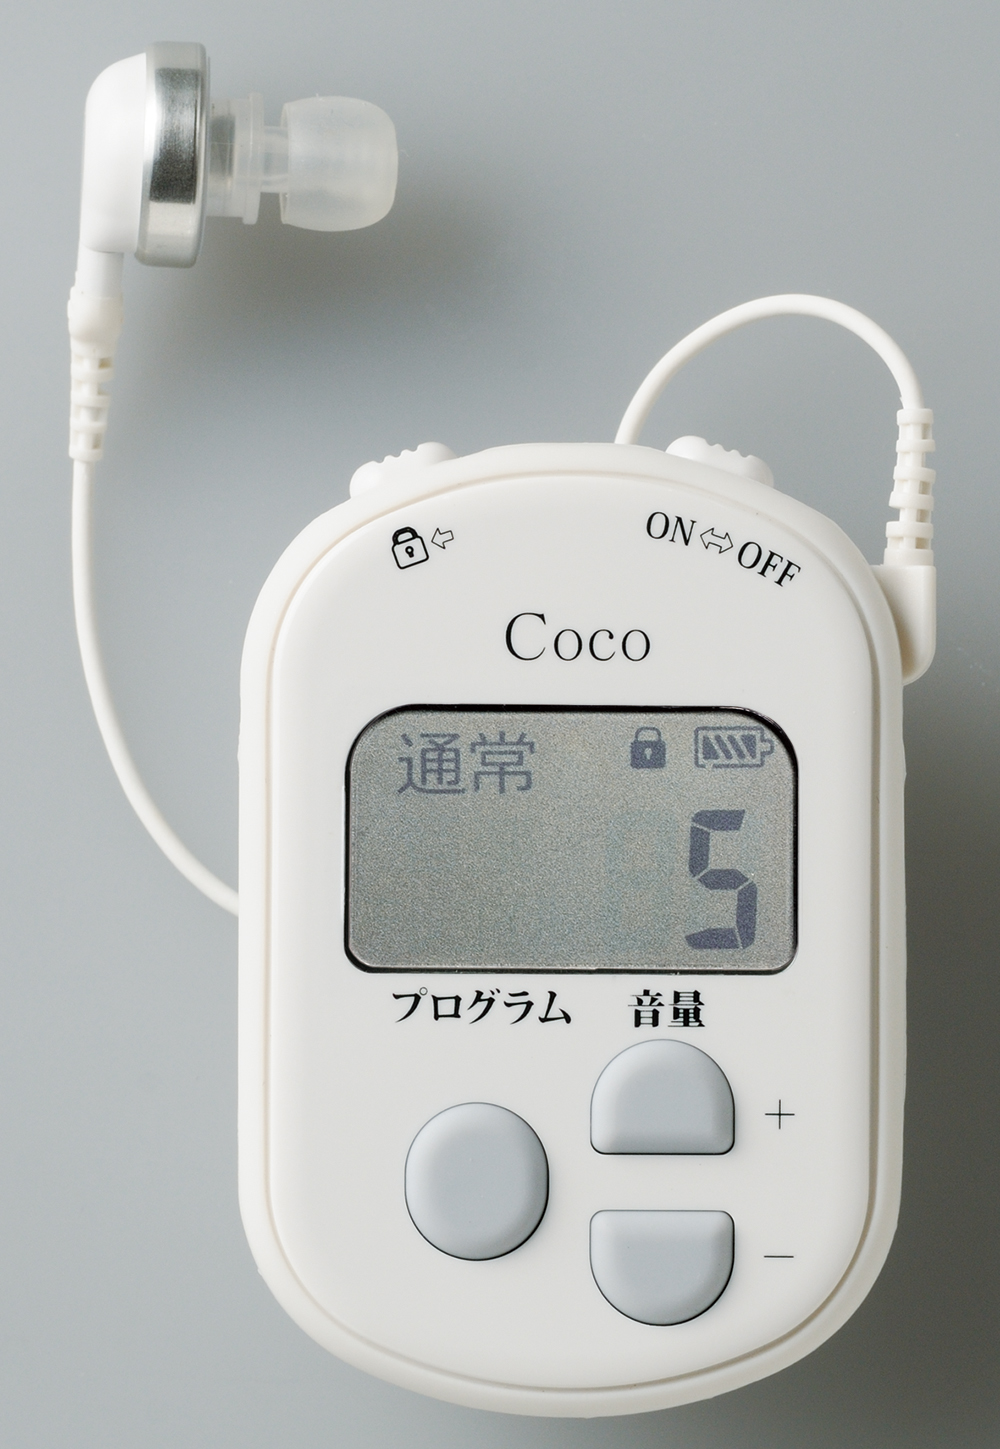 ポケット型デジタル補聴器・ココ